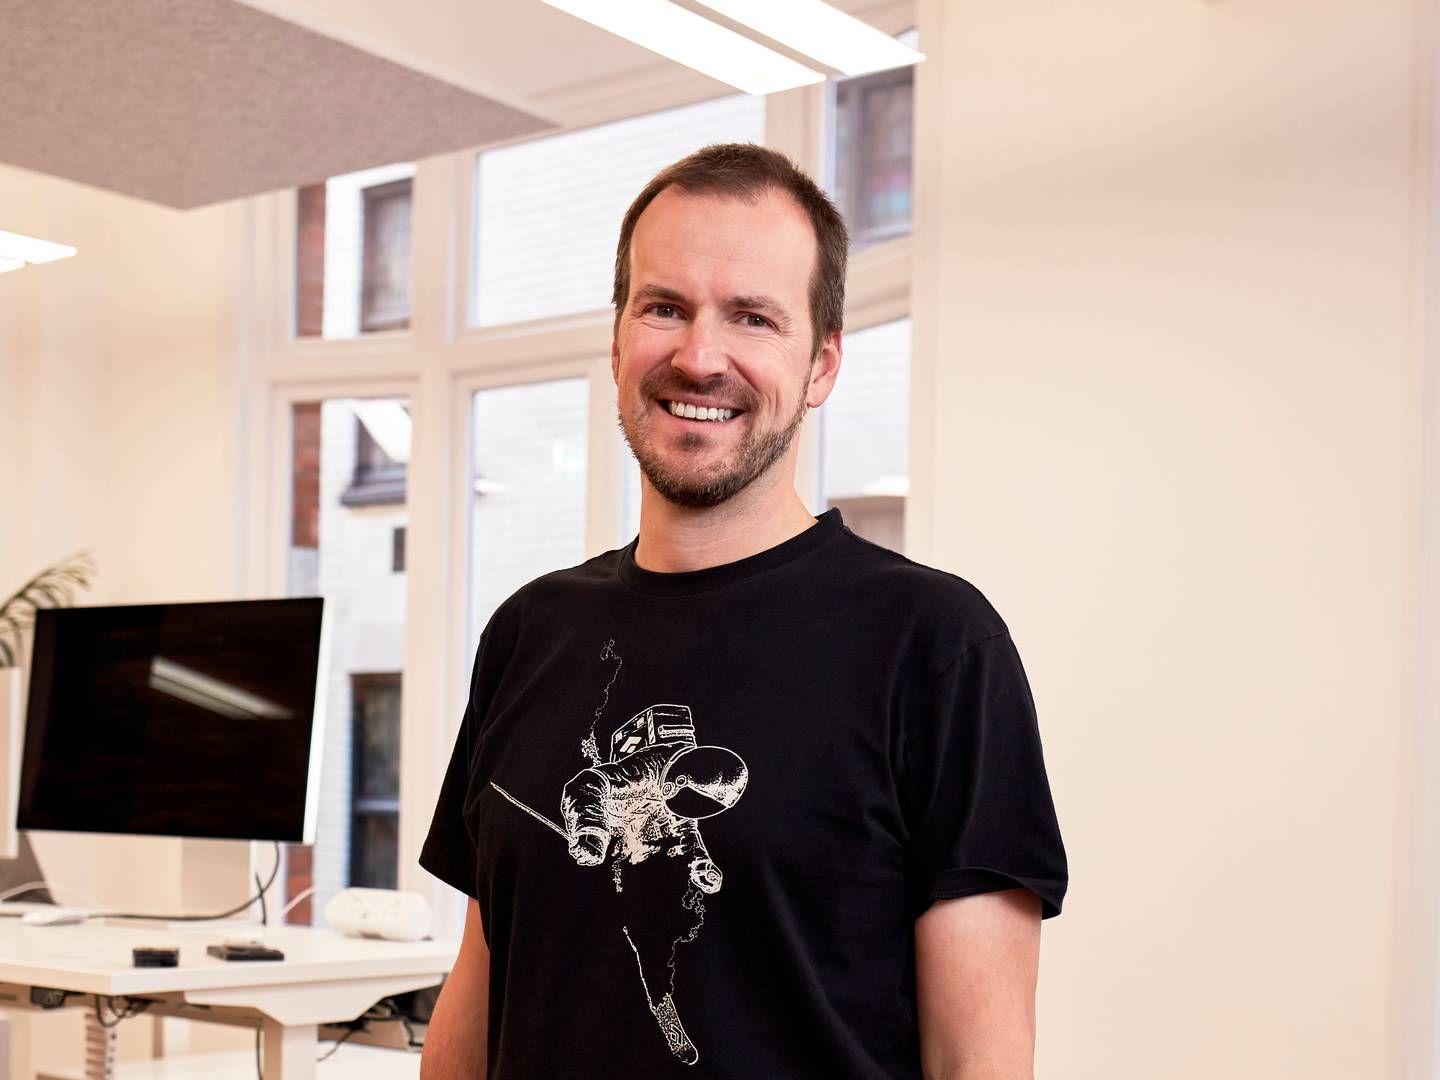 Taavet Hinrikus var i 2003 en af de første ansatte i virksomheden Skype. | Foto: PR